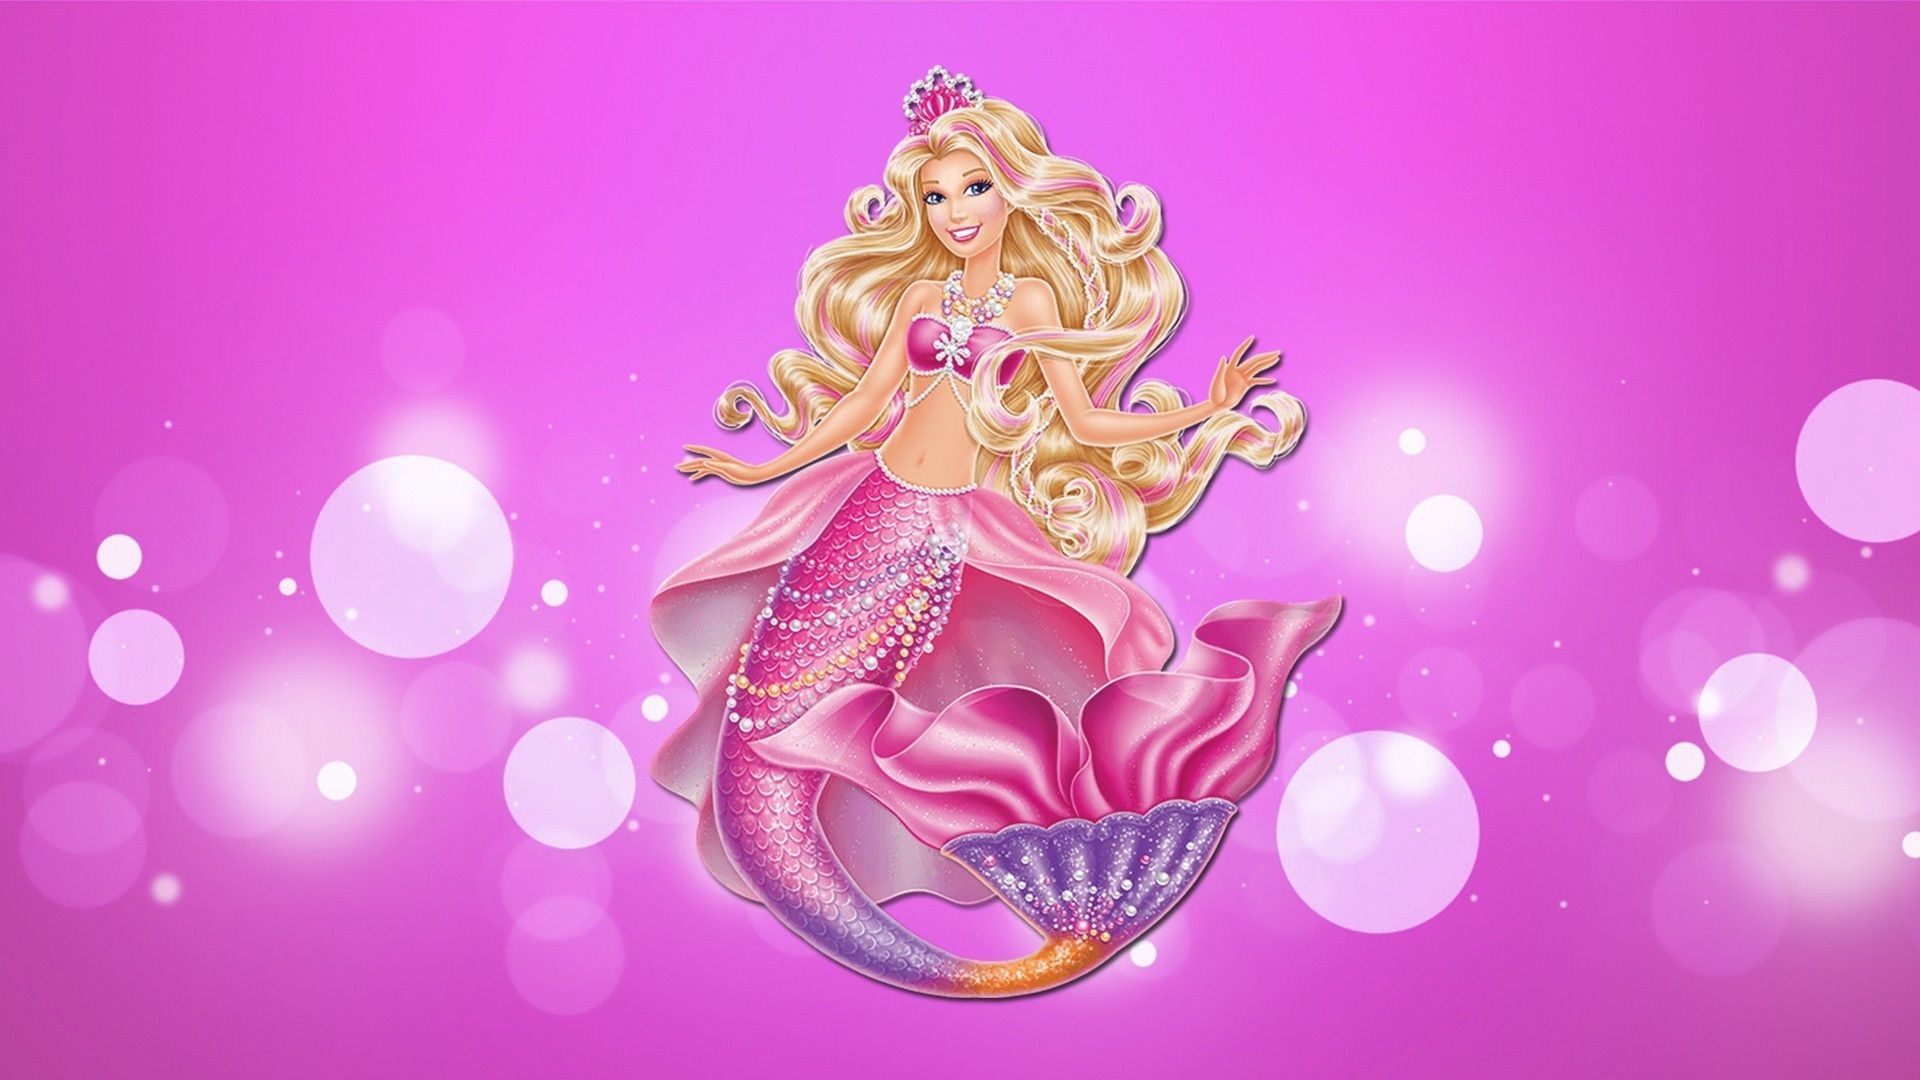 Barbie Mermaid Wallpaper Free Barbie Mermaid Background